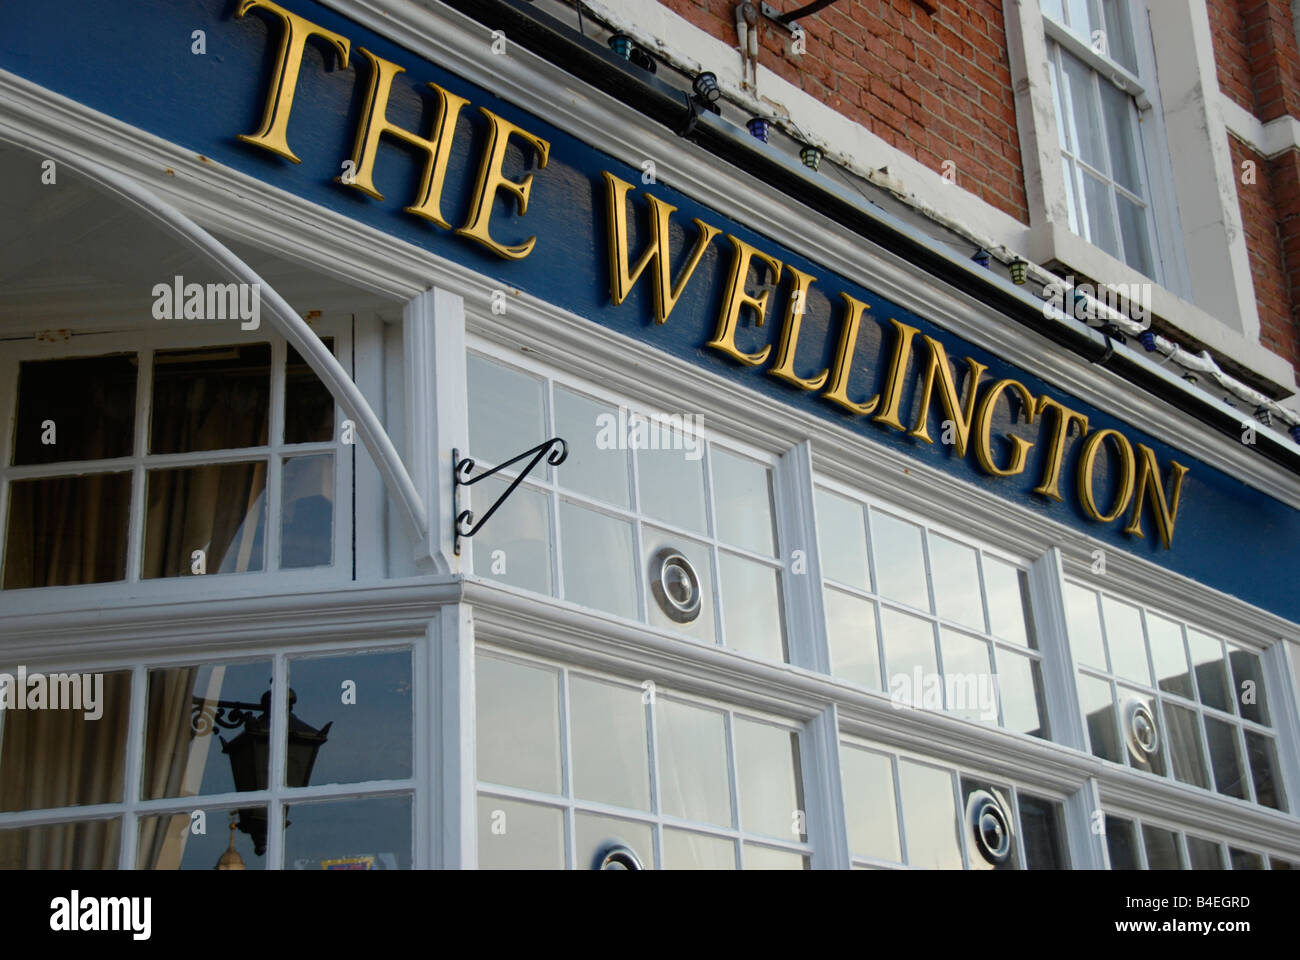 The Wellington pub Portsmouth Hampshire England Stock Photo